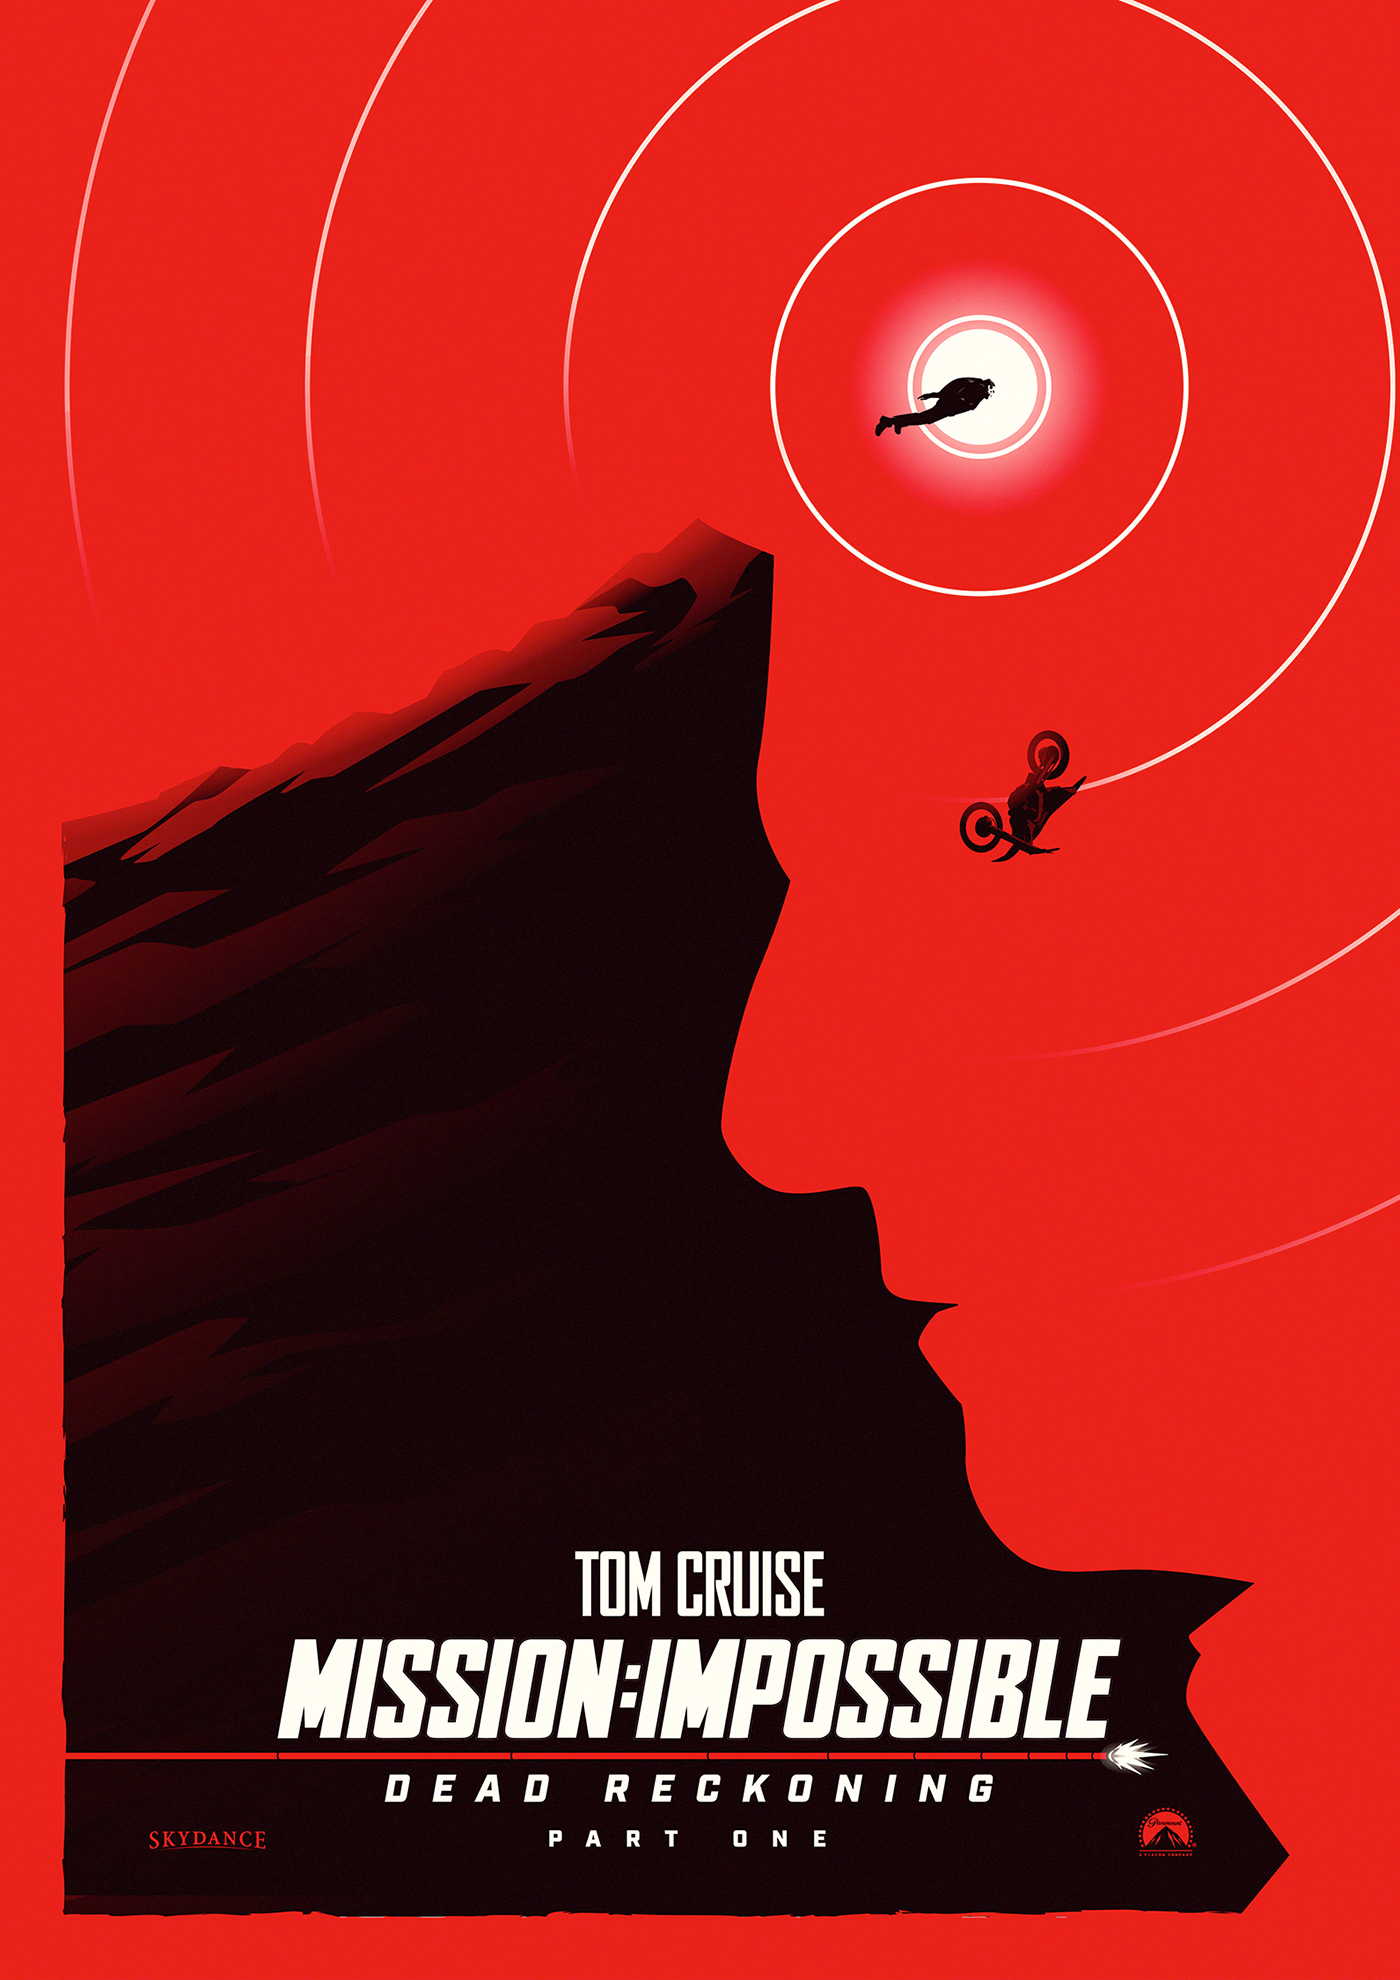 Tom Cruise spy film poster key art Paramount digital illustration adobe illustrator minimalist Illustrator Mission Impossible